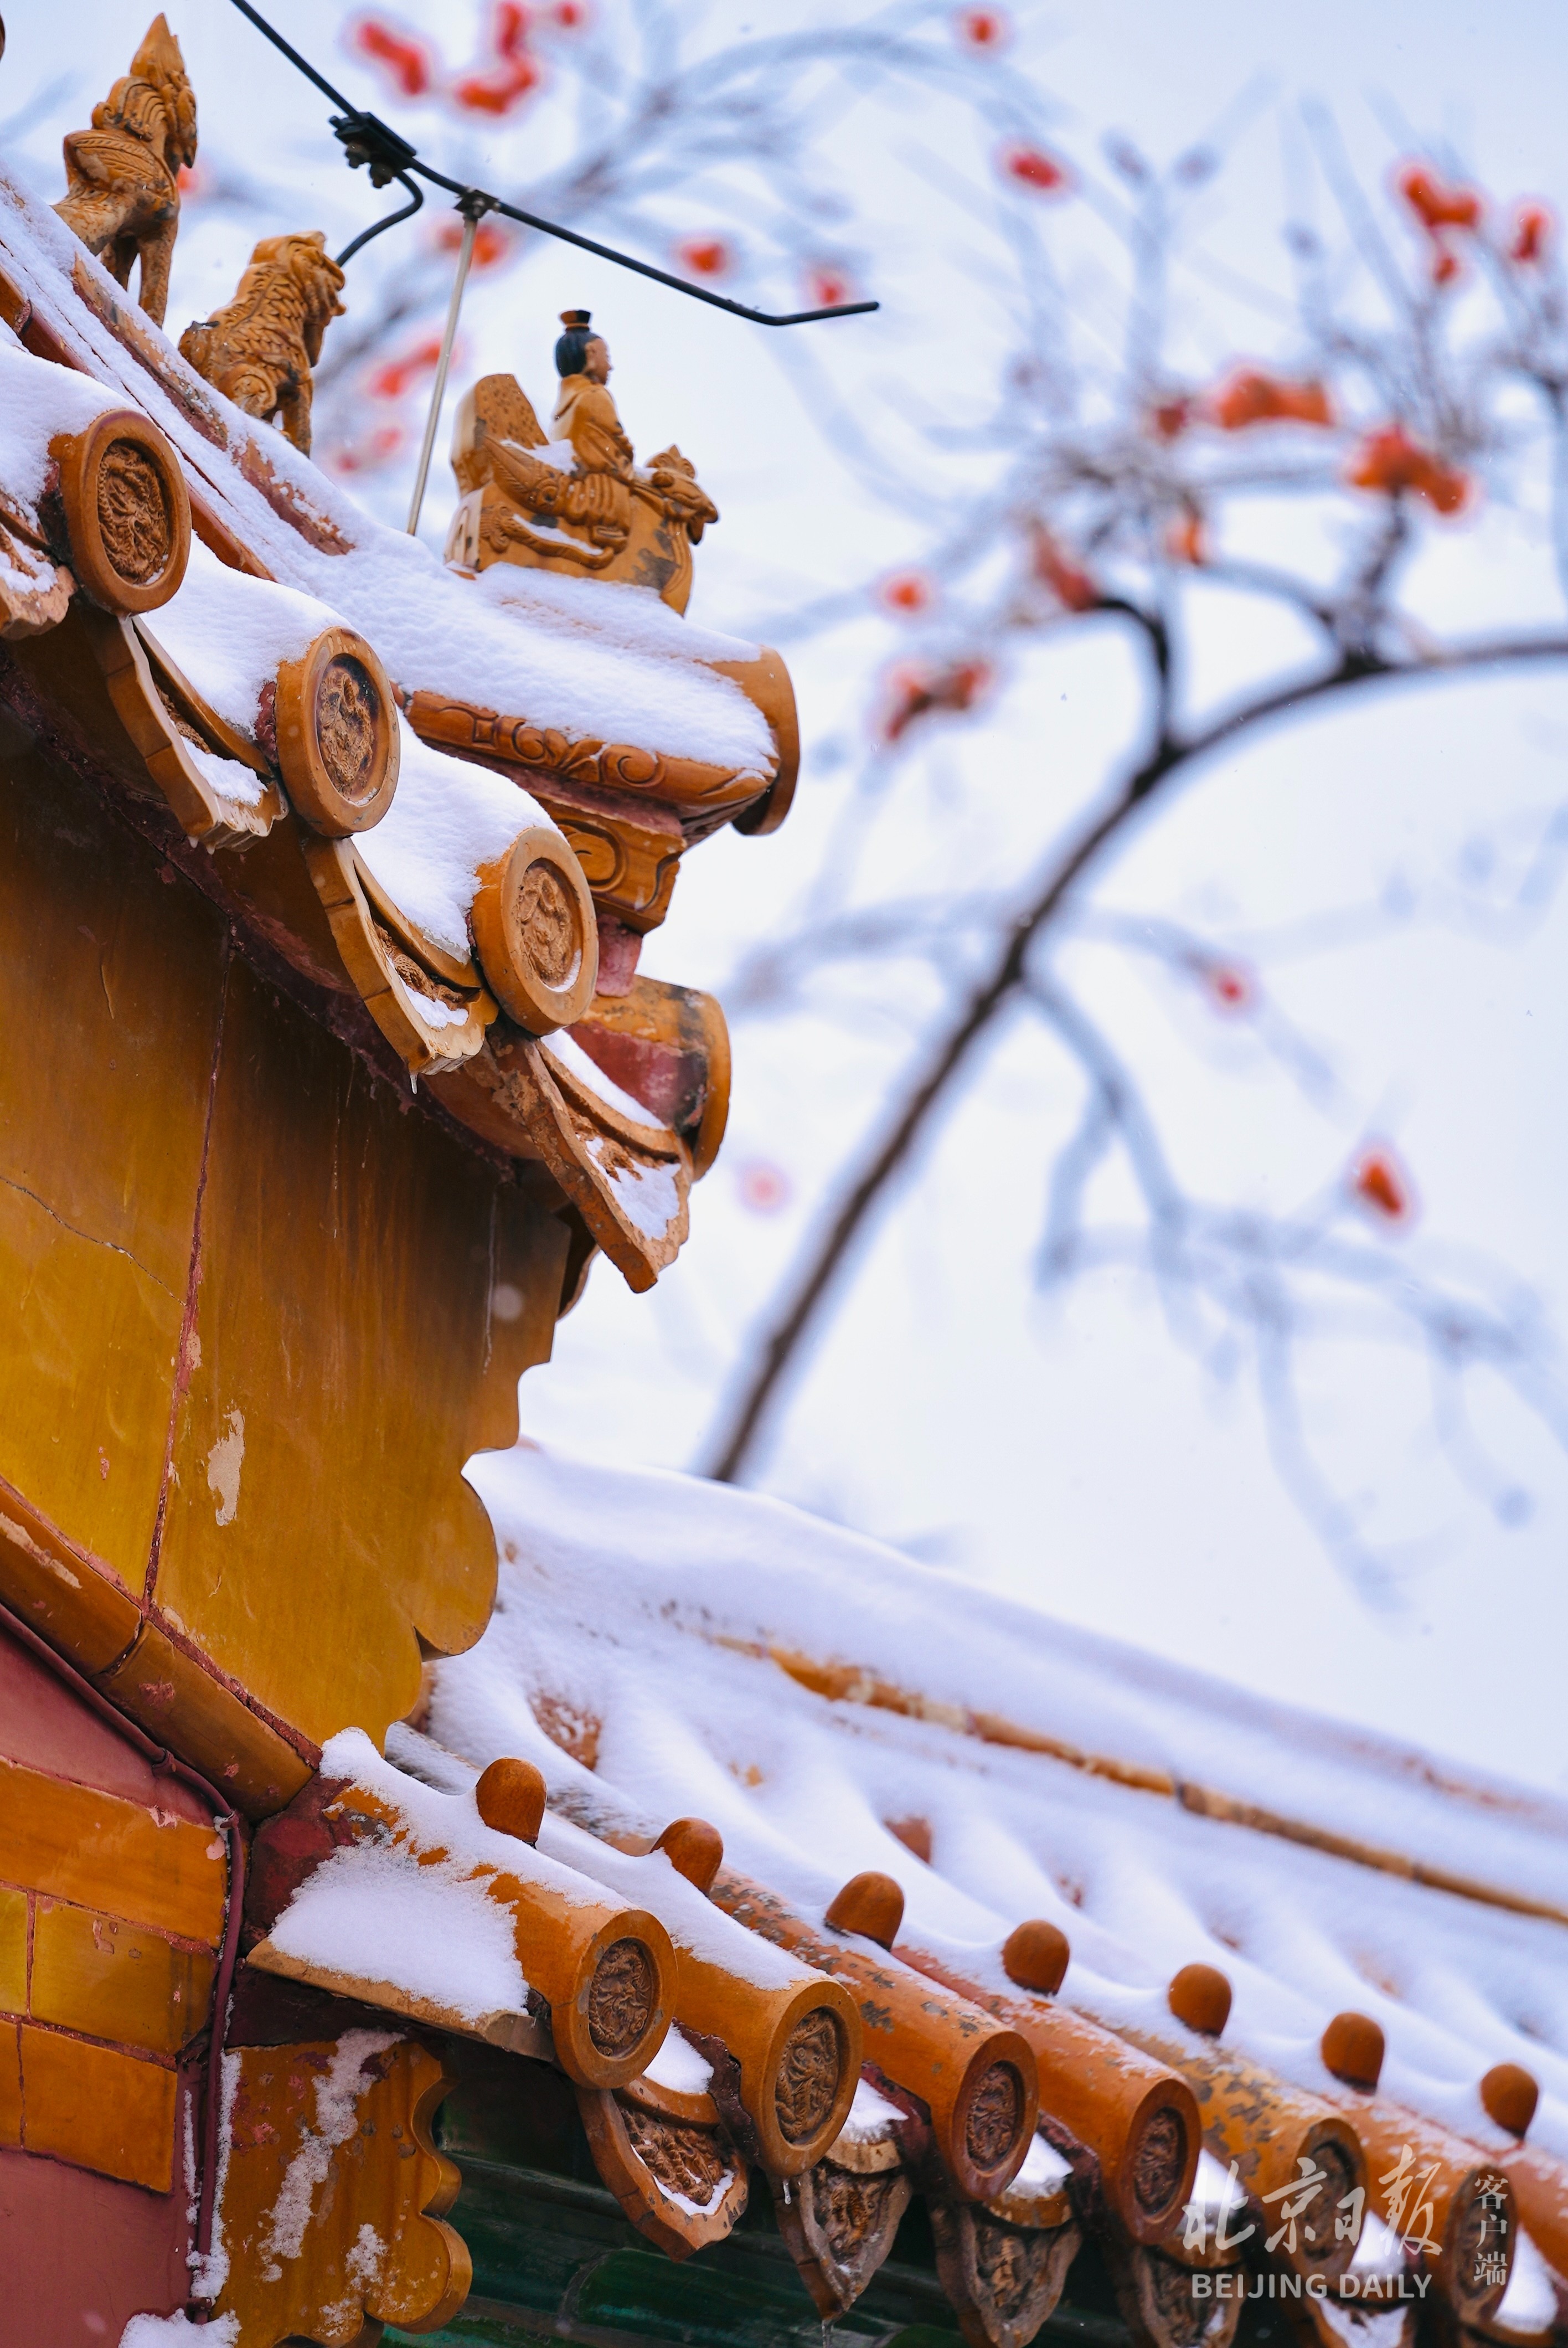 一夜梦回紫禁城今天的故宫雪景大片来了